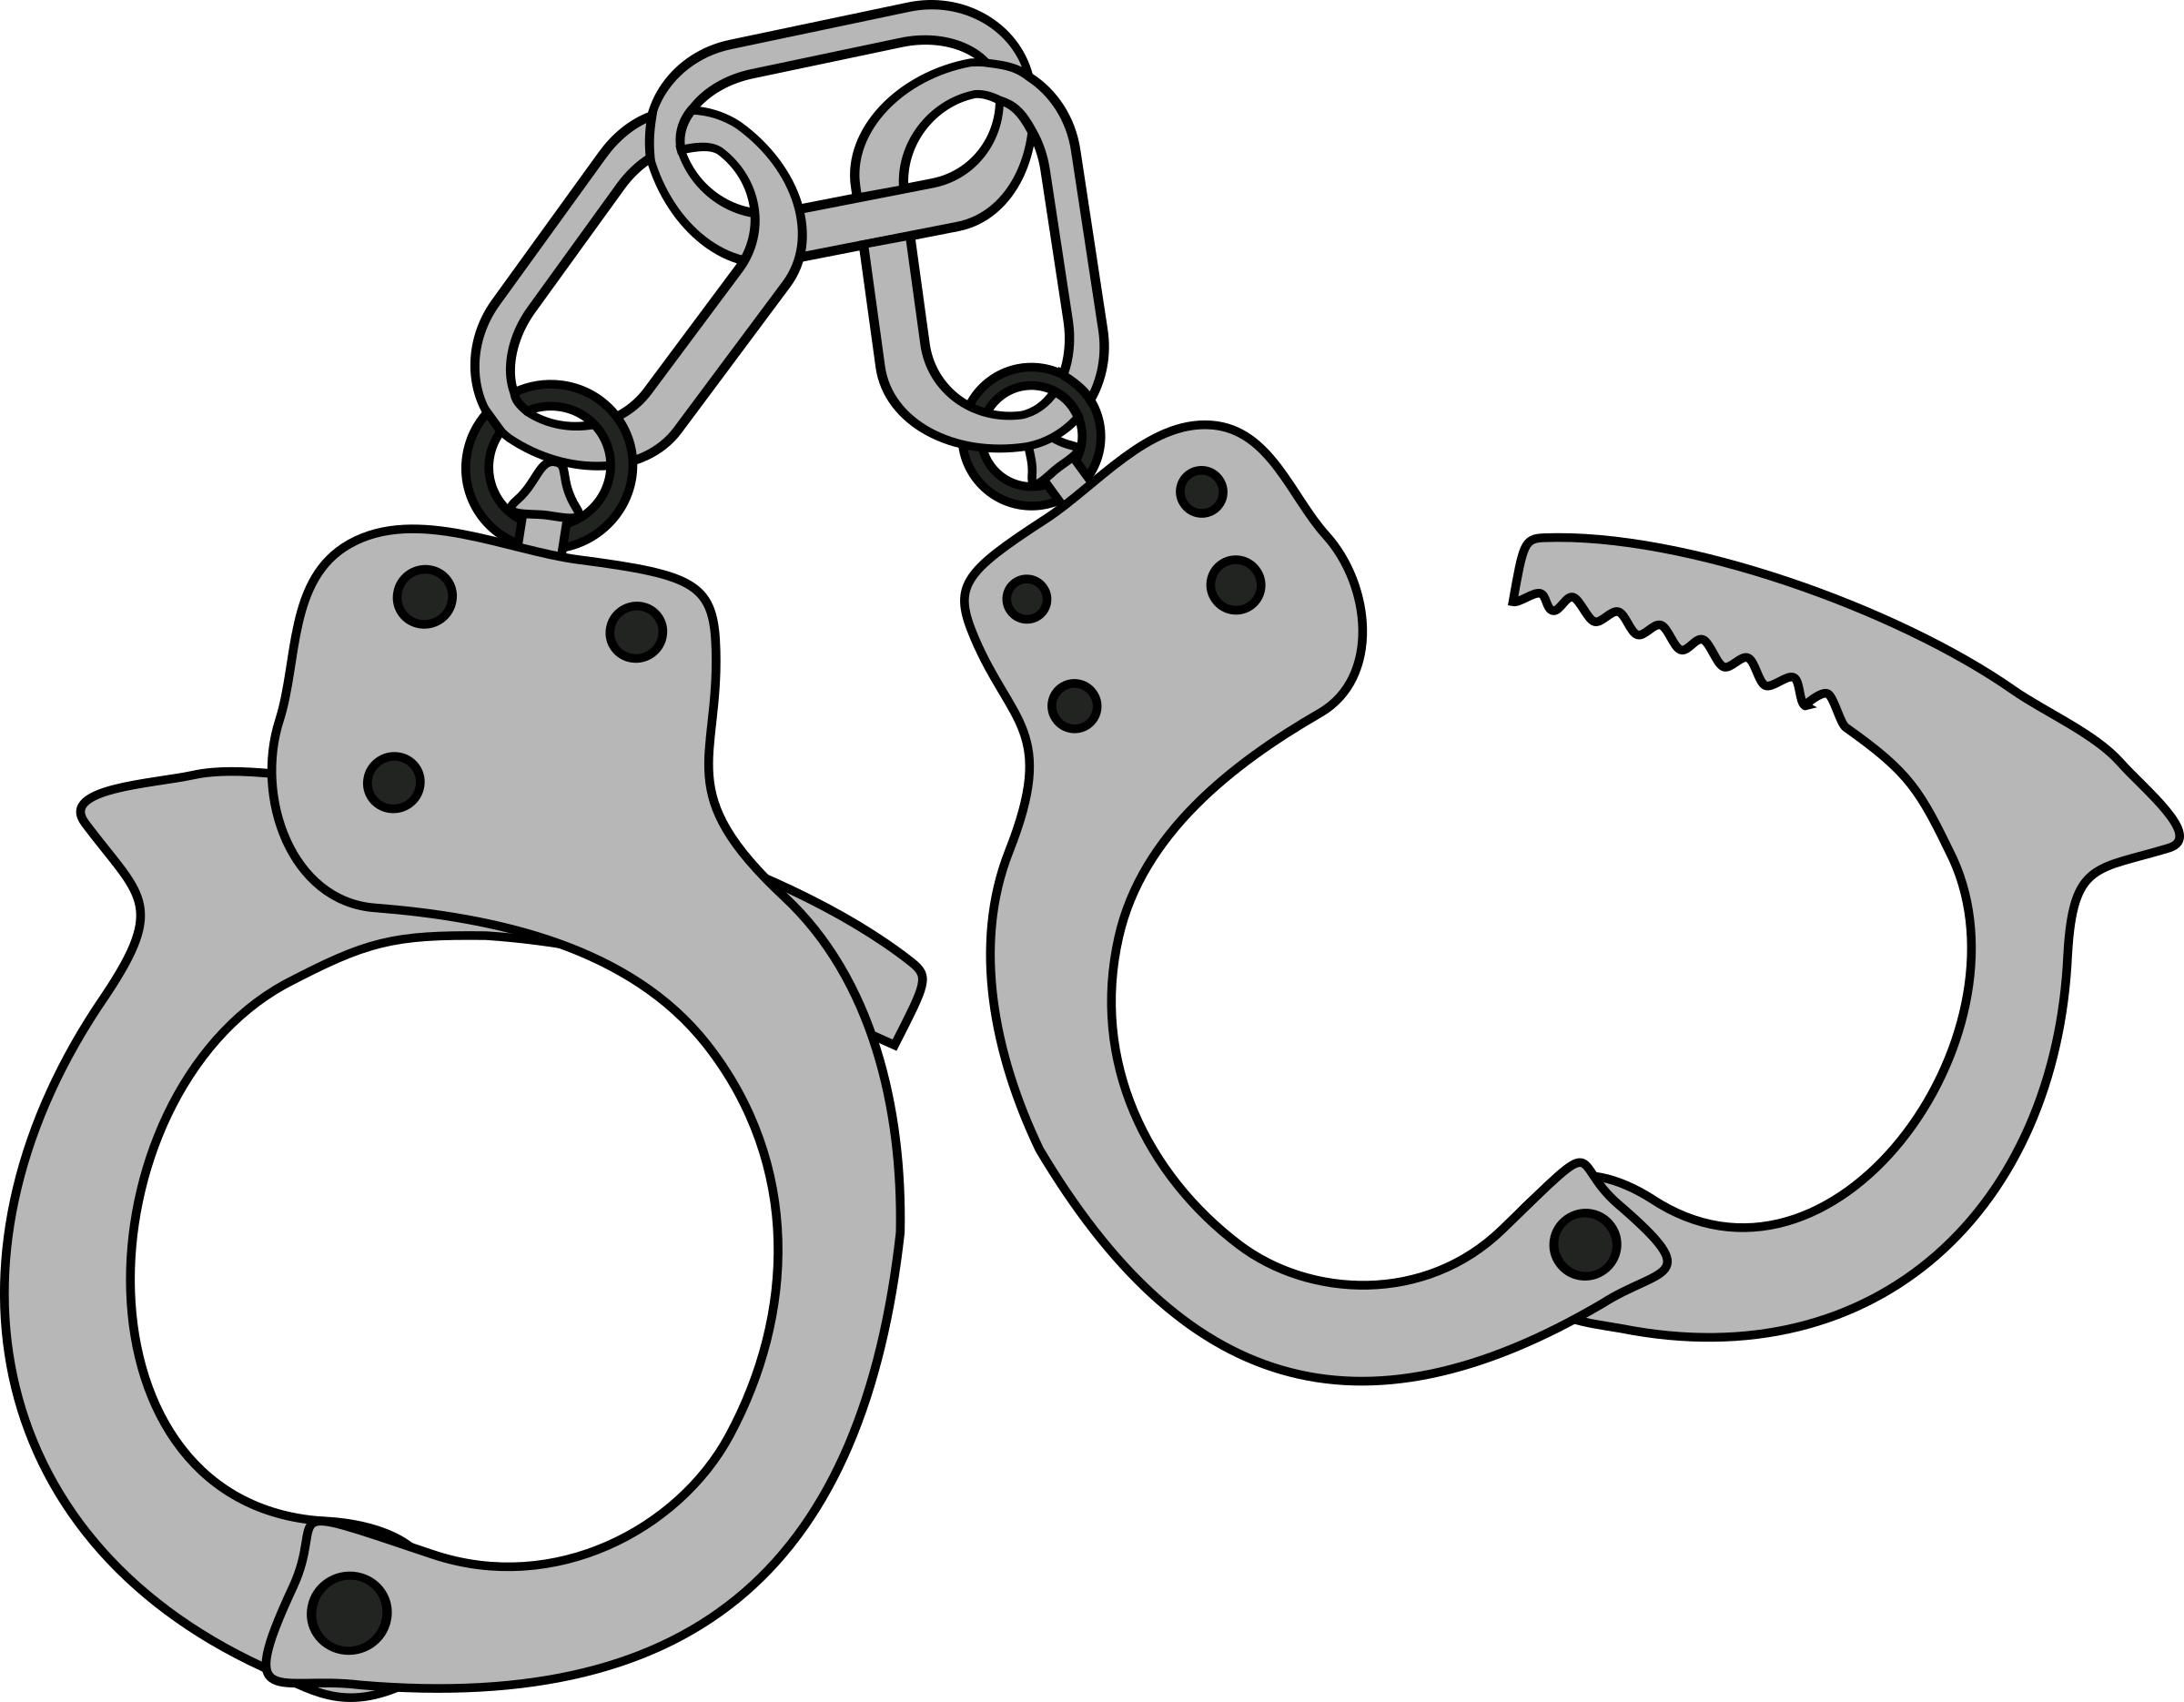 Simple colored handcuffs big. Handcuff clipart svg